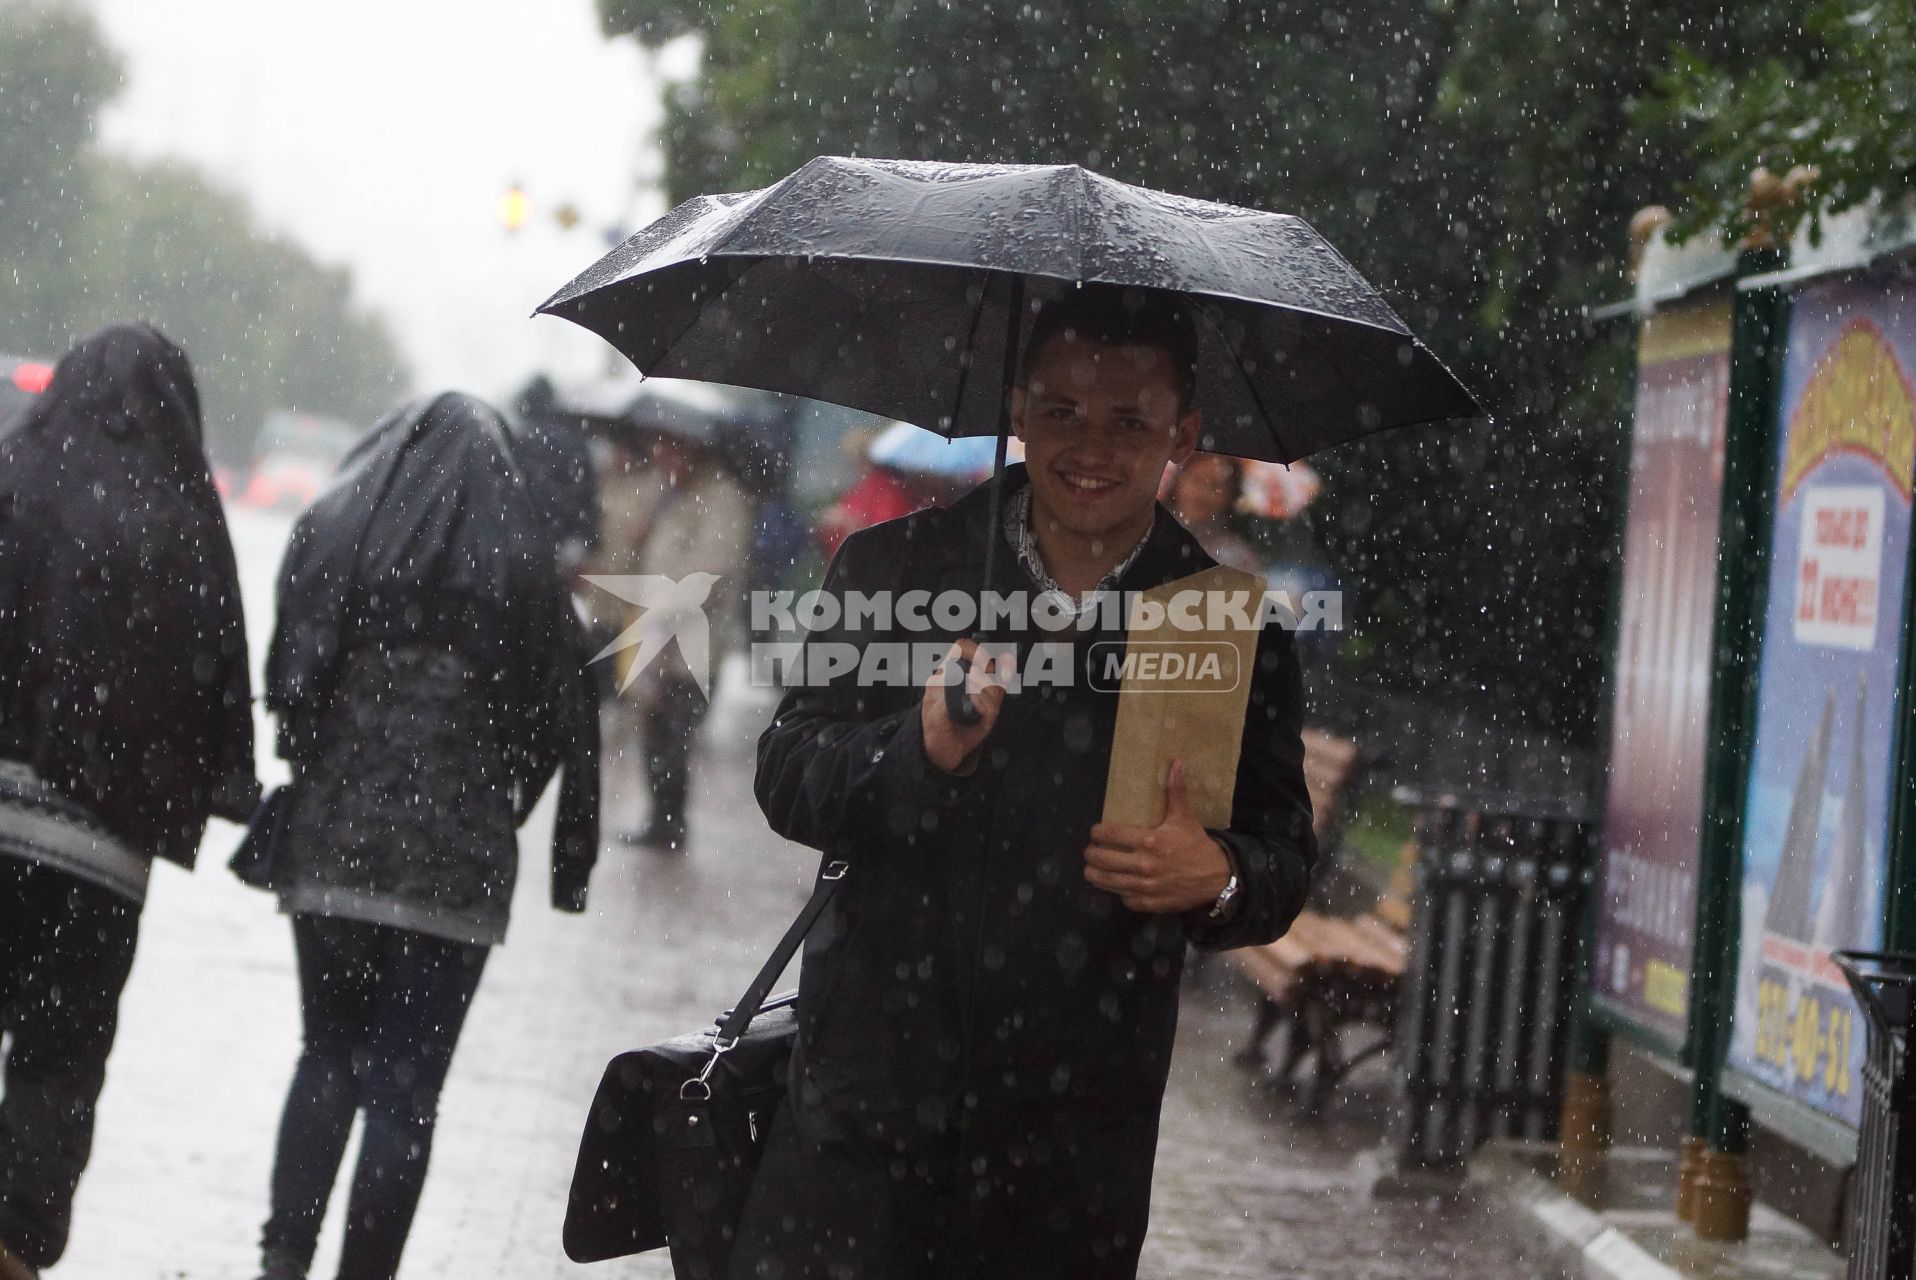 парень под зонтом улыбается во время дождя